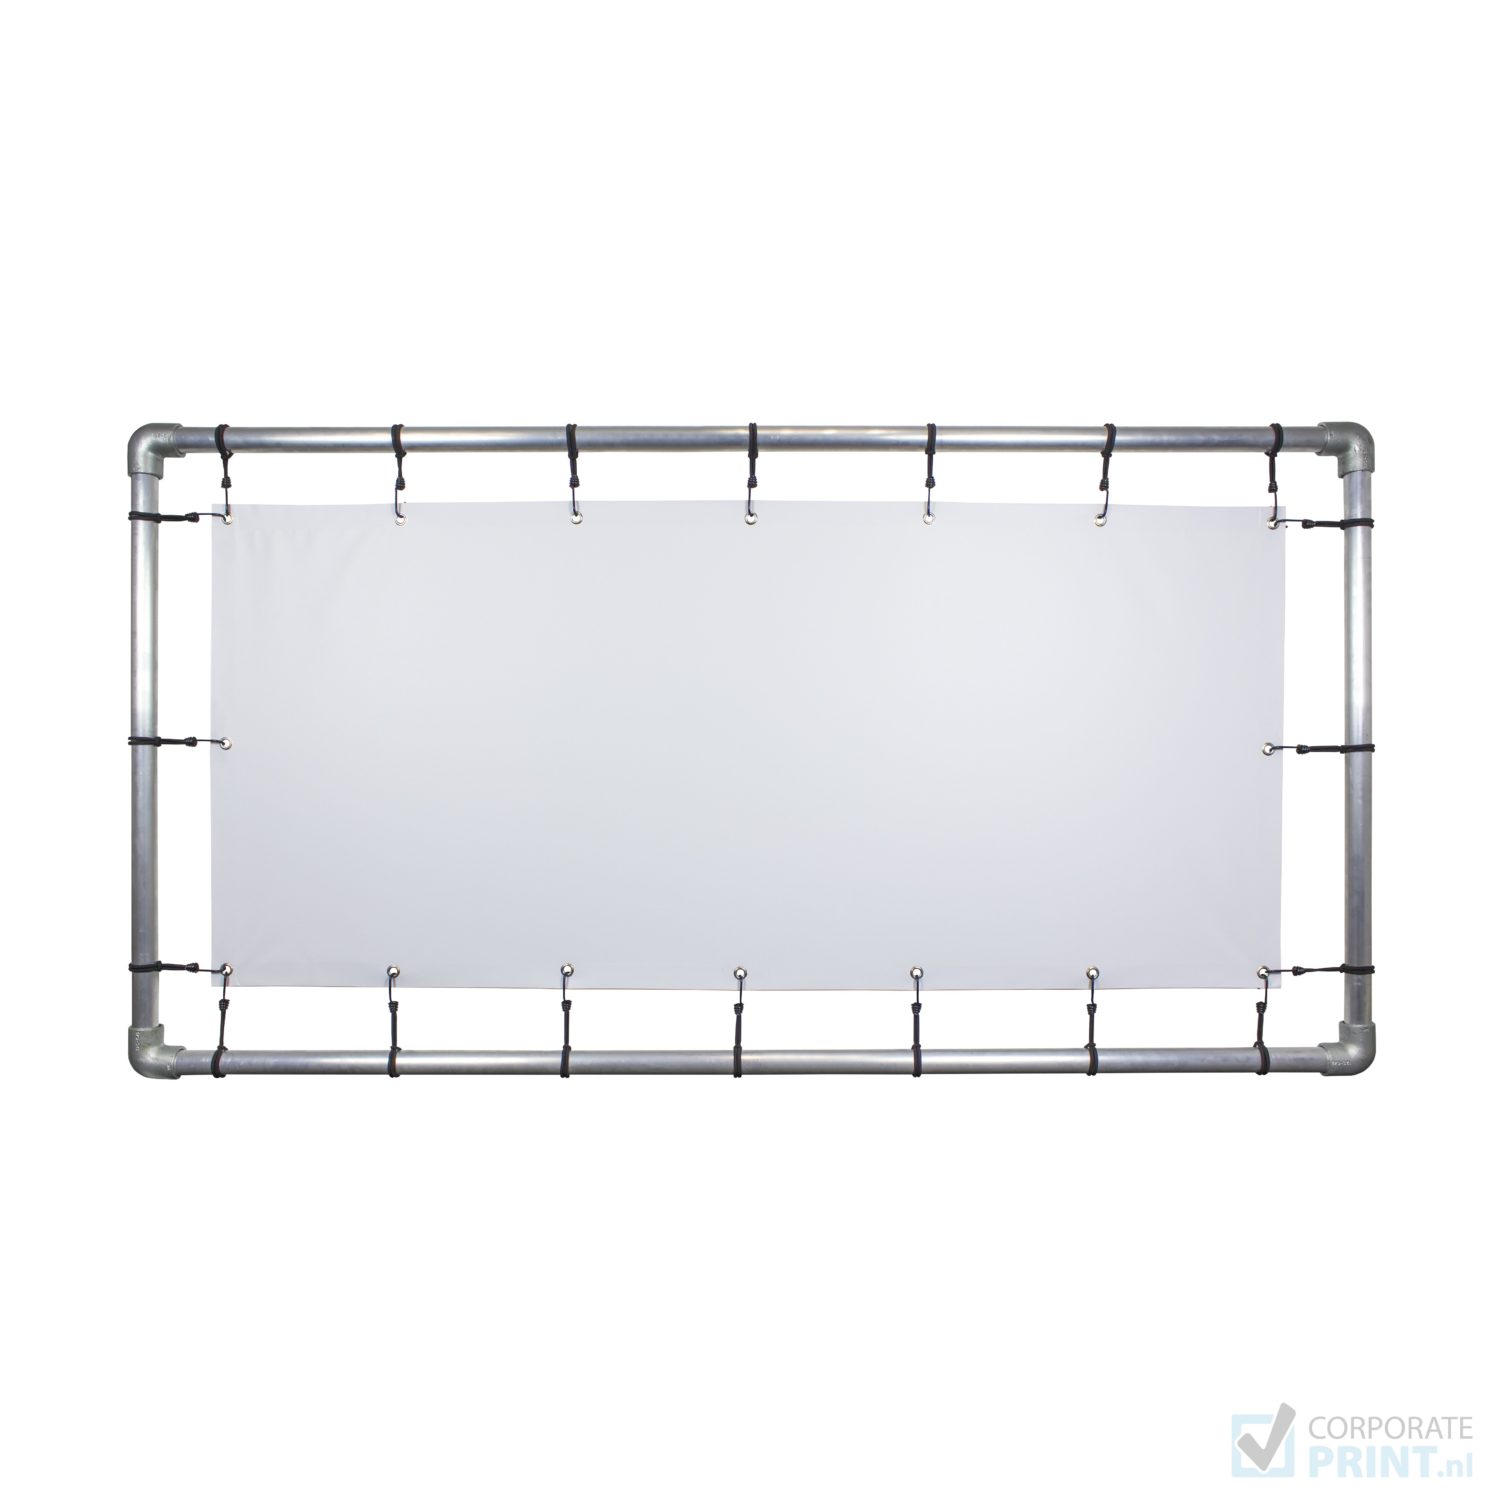 aluminium frame buizen spandoek elastiek corporate print corporateprint logo bedrukken